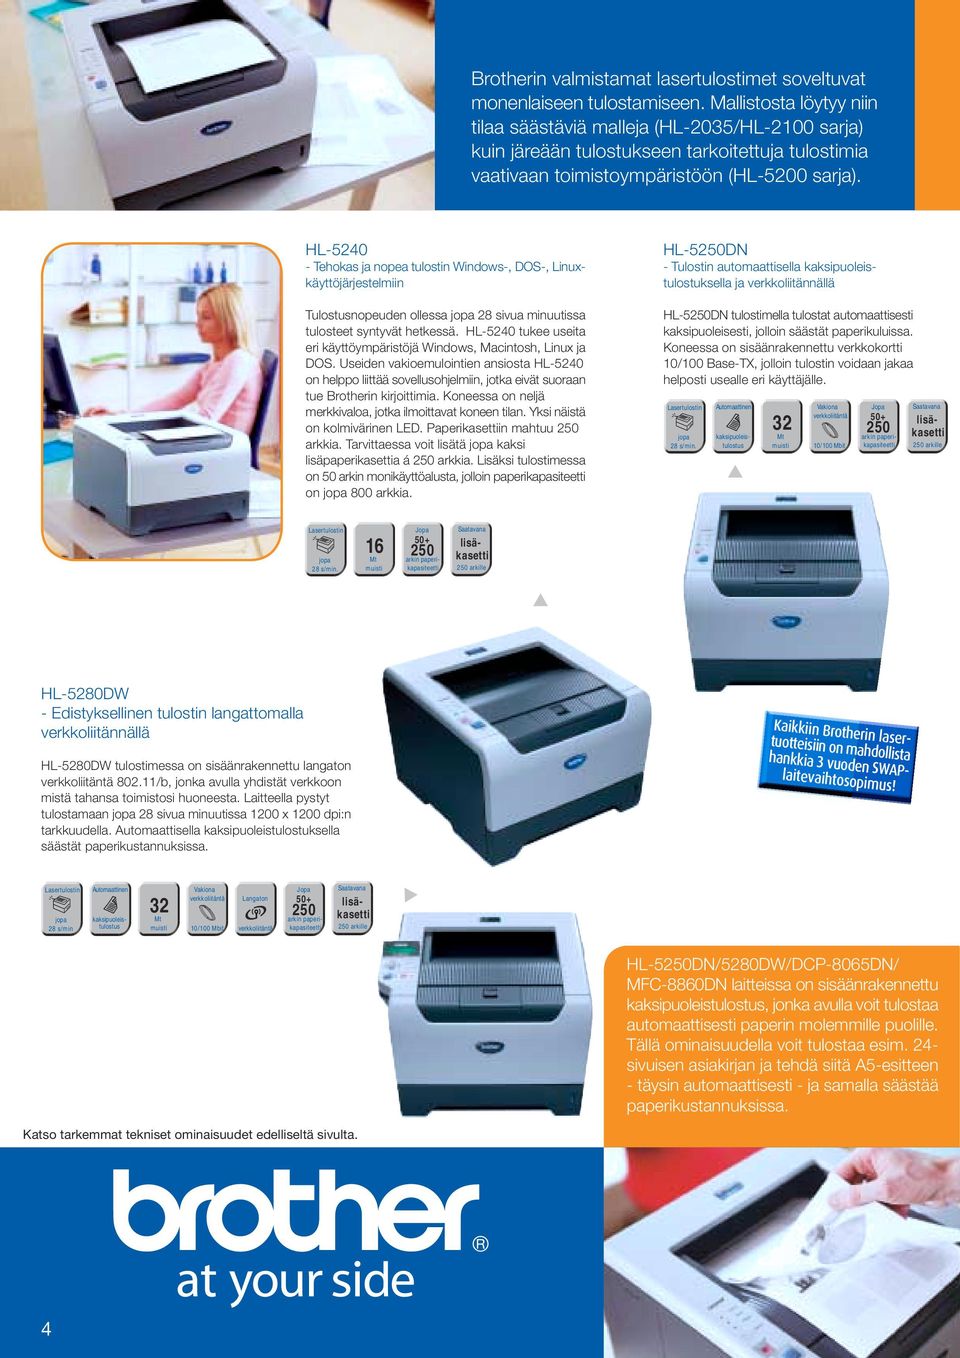 HL-5240 - Tehokas ja nopea tulostin Windows-, DOS-, Linuxkäyttöjärjestelmiin Tulostusnopeuden ollessa 28 sivua minuutissa tulosteet syntyvät hetkessä.